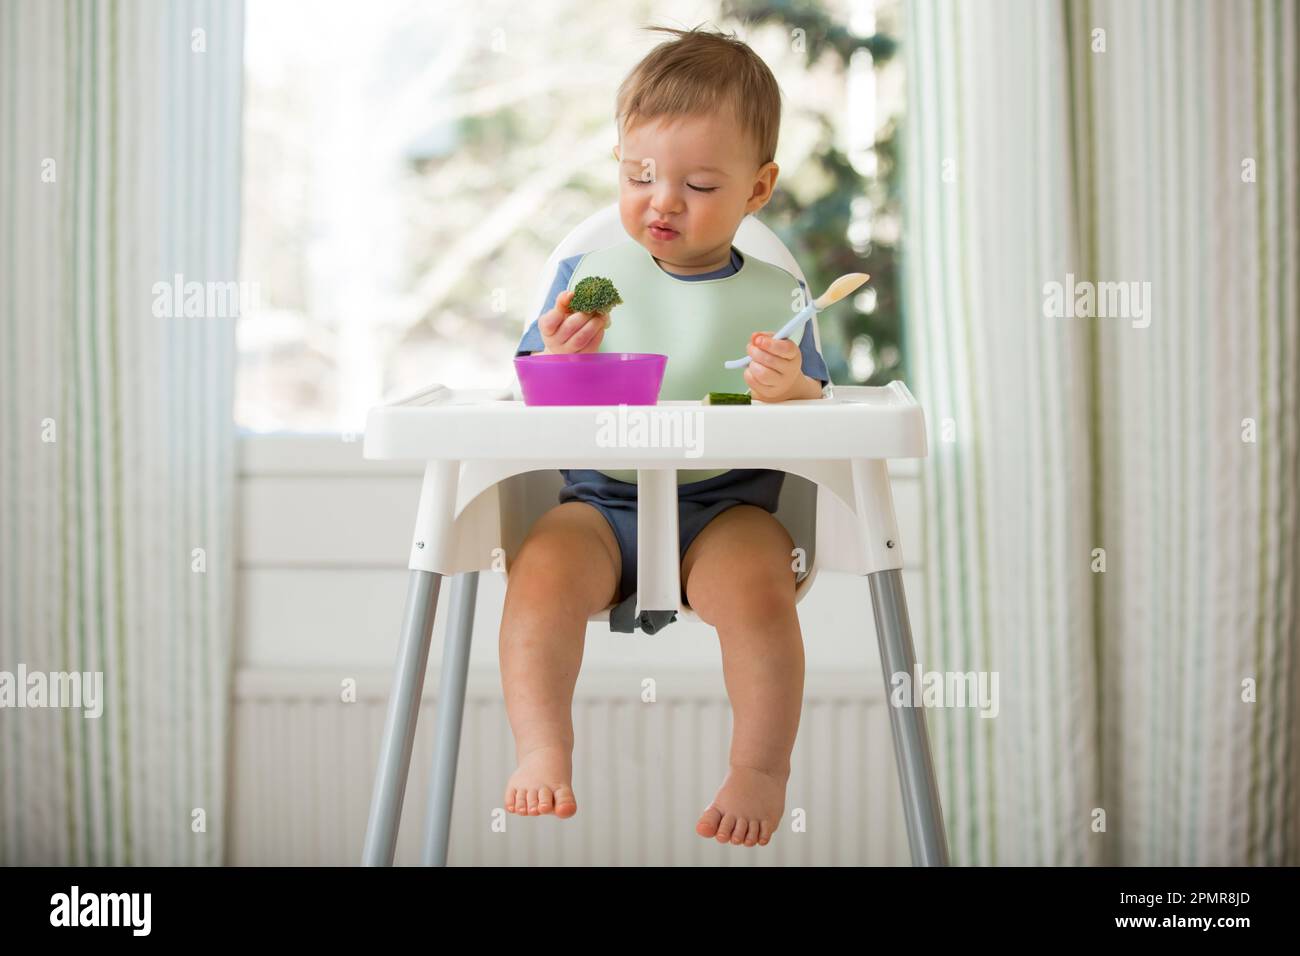 Bébé mignon mangeant avec la première nourriture solide, bébé assis dans une chaise haute. L'enfant ne veut pas manger, refuse de manger, se fait des visages. Intérieur de cuisine confortable. Banque D'Images